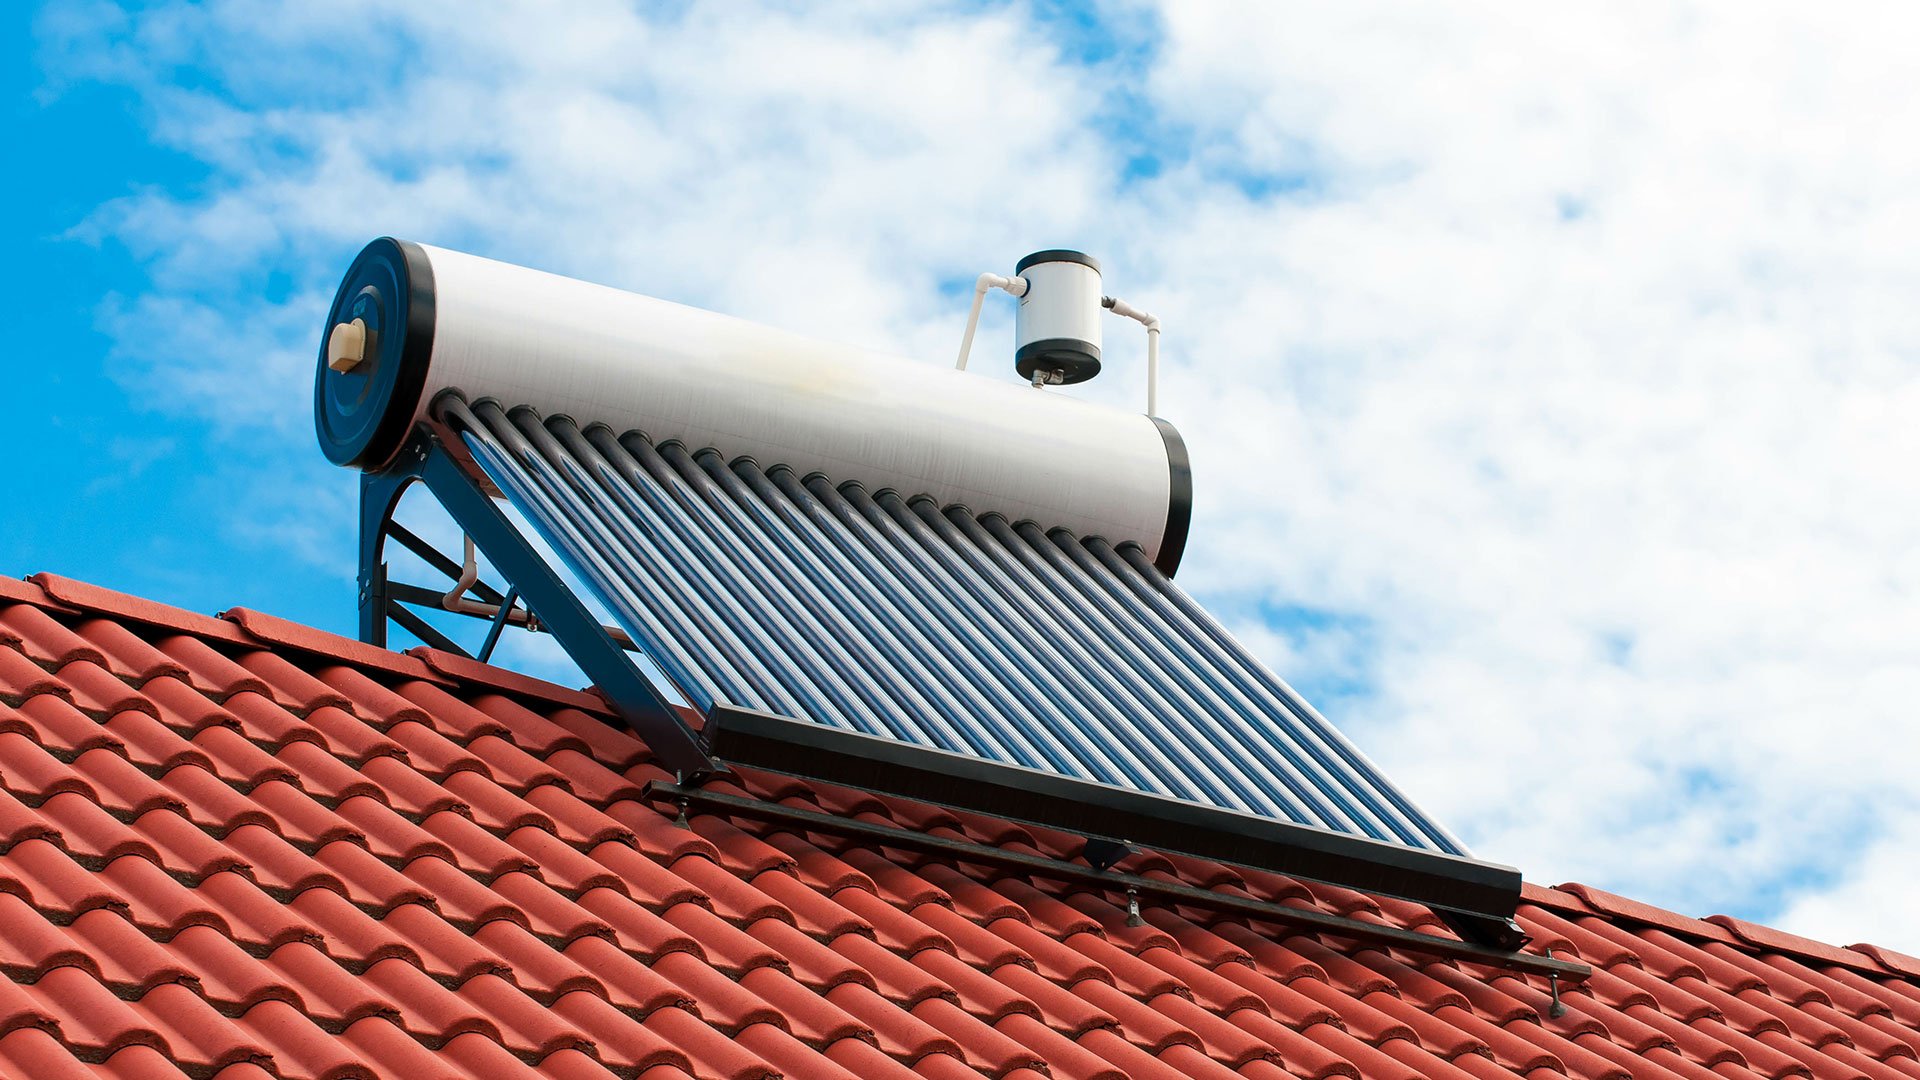 panele fotowoltaiczne do grzania wody zainstalowane na dachu domu